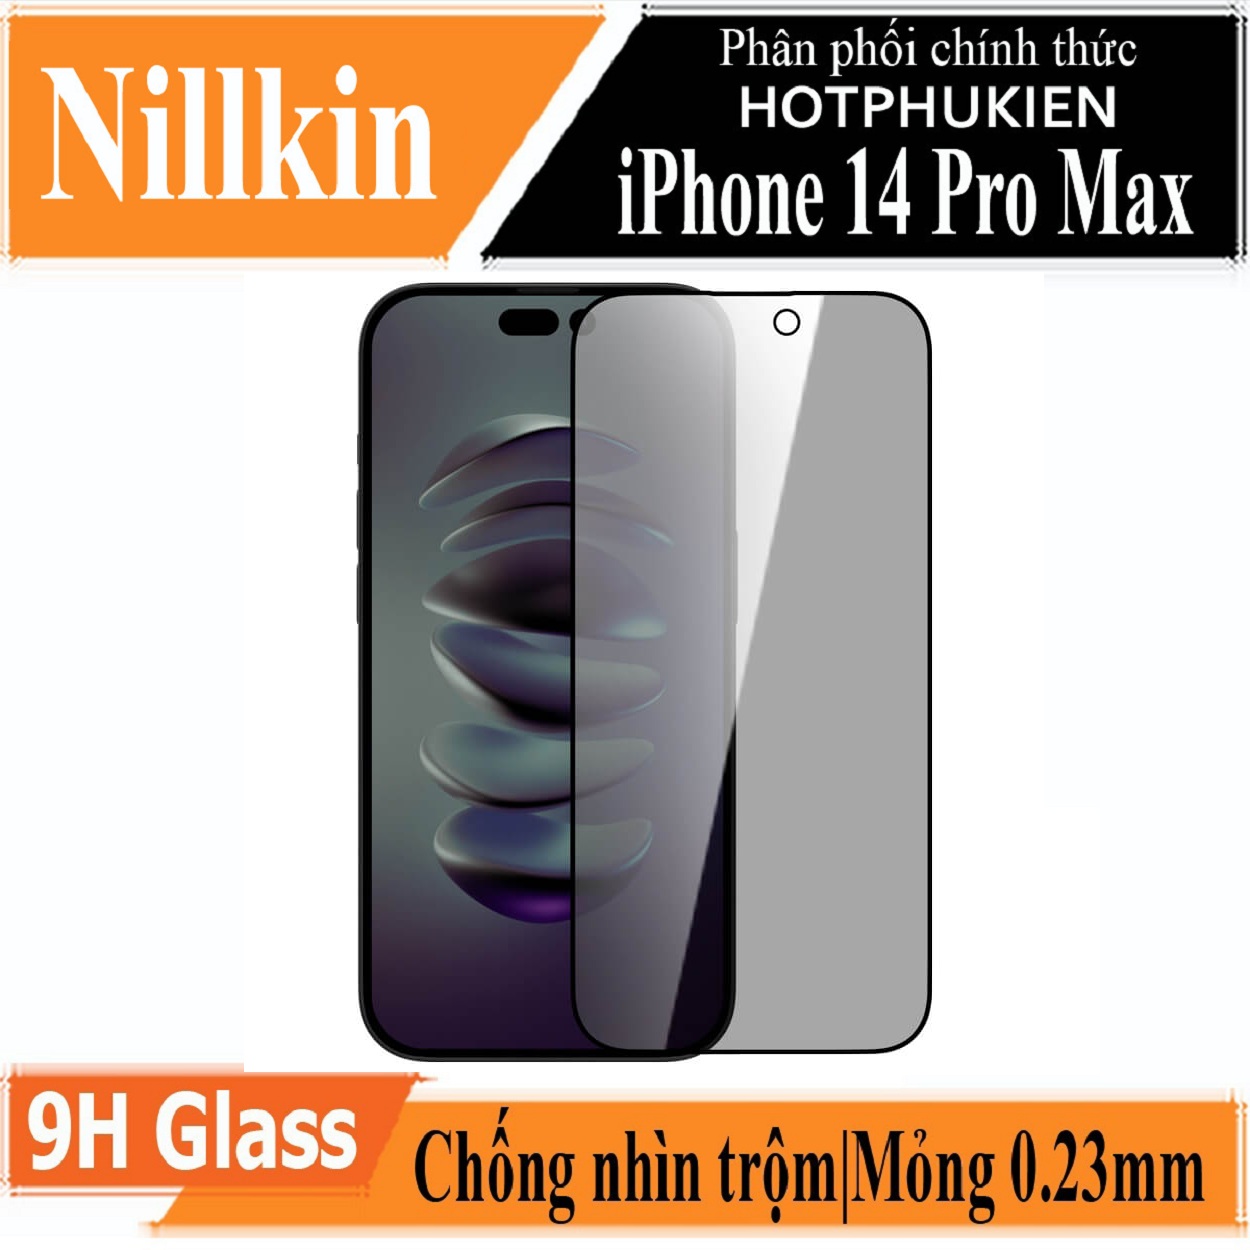 Dán cường lực chống nhìn trộm cho iPhone 14 Pro Max hiệu Nillkin Amazing Guardian